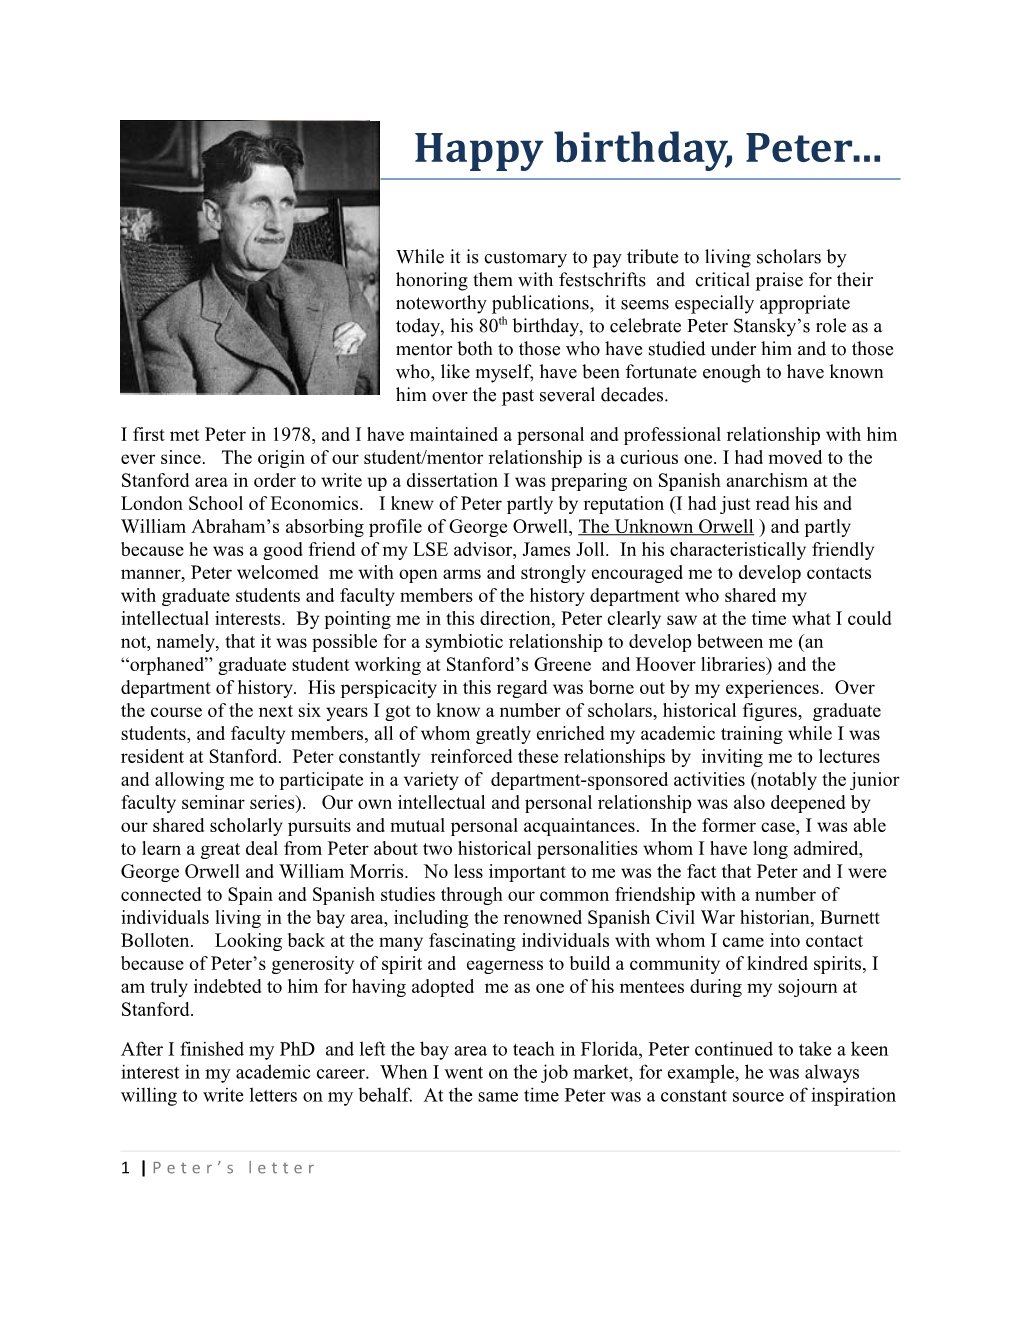 Happy Birthday, Peter